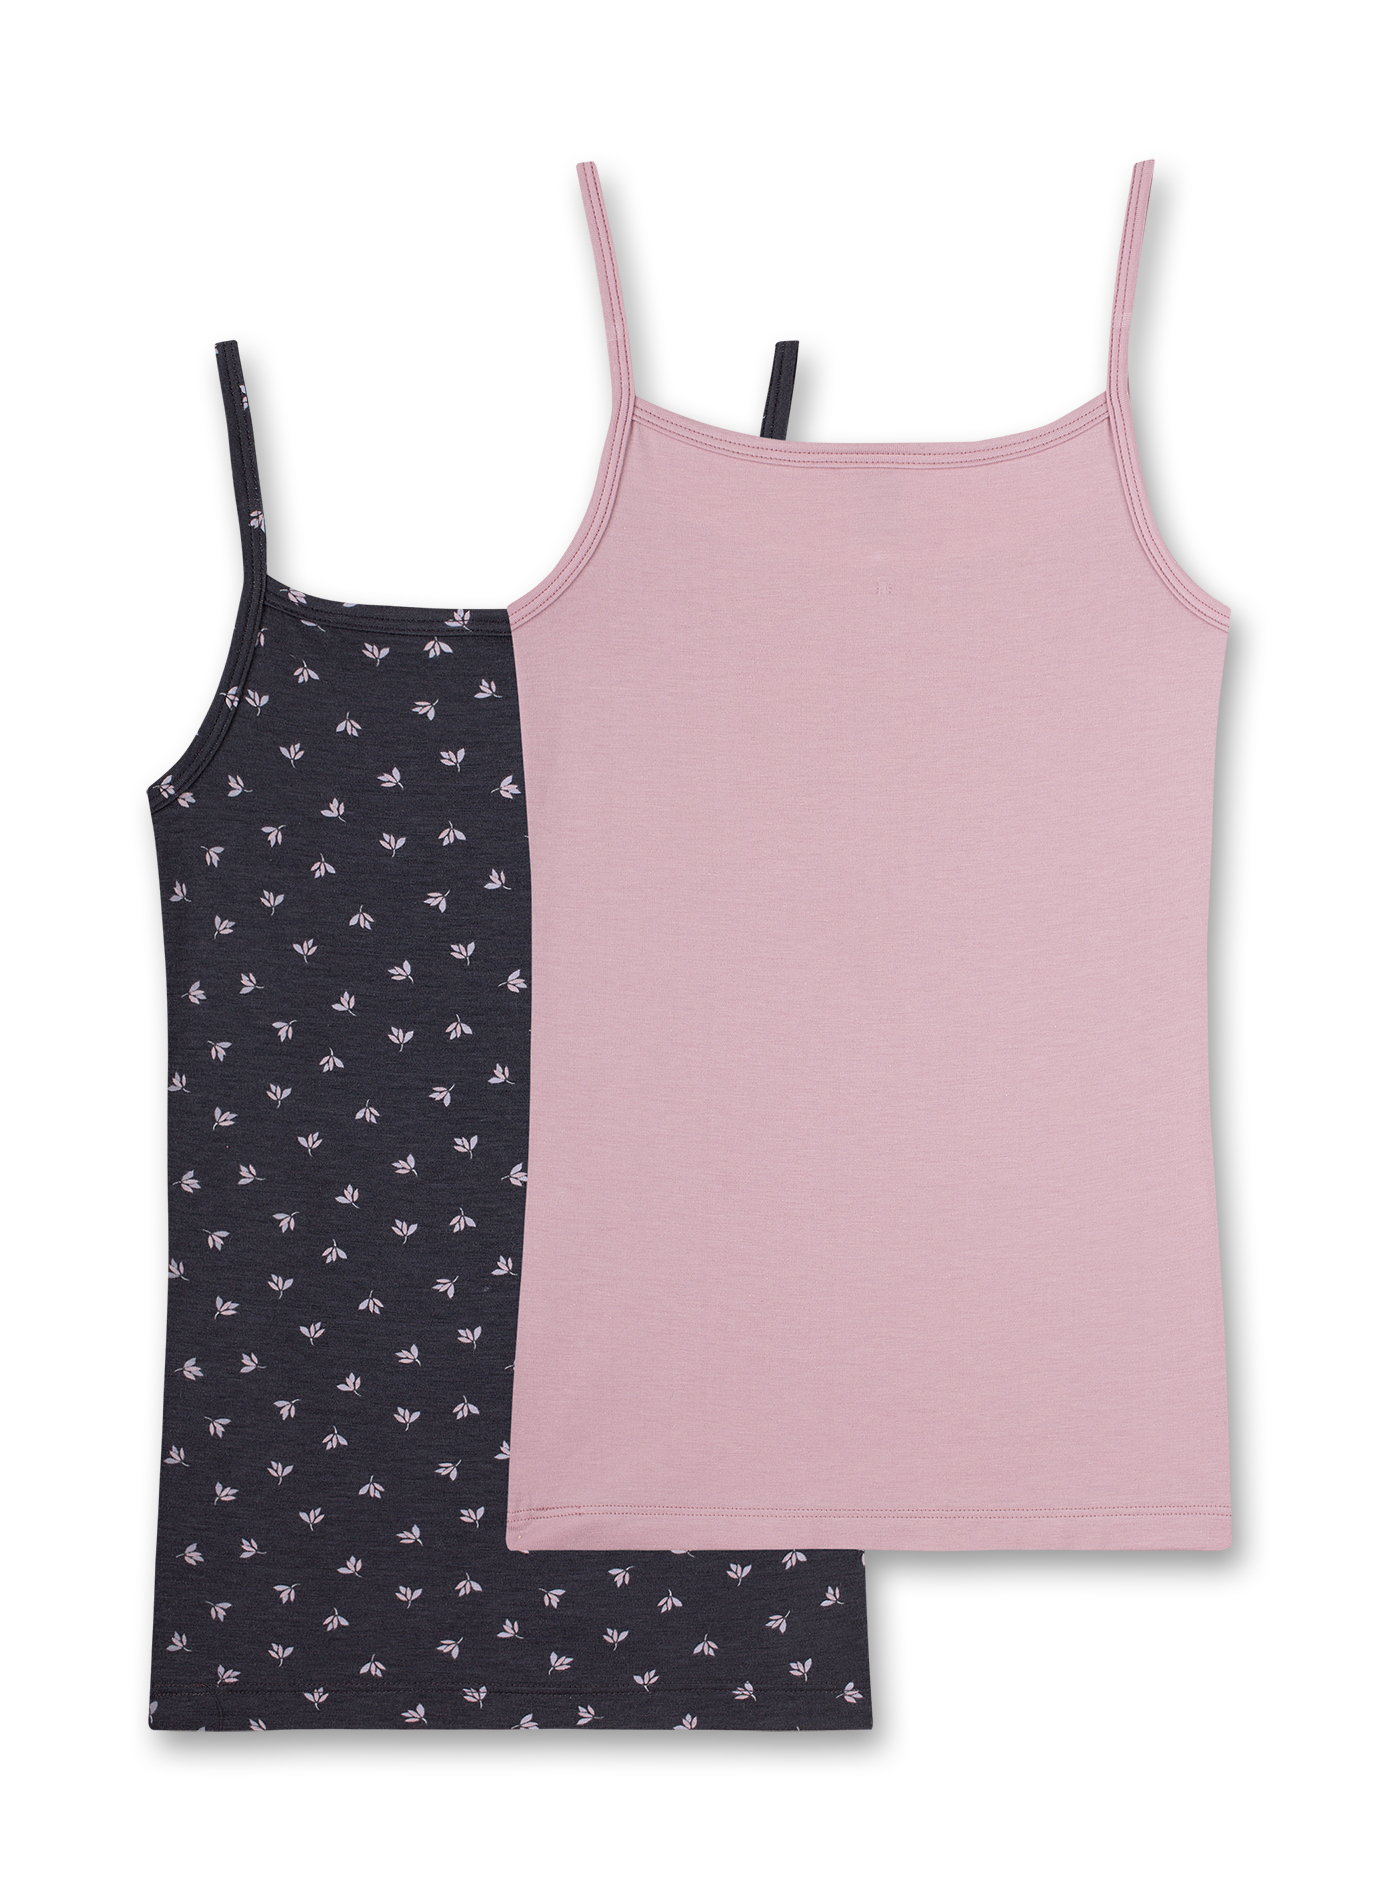 Mädchen-Unterhemd (Doppelpack) Dunkelgrau und Rosa